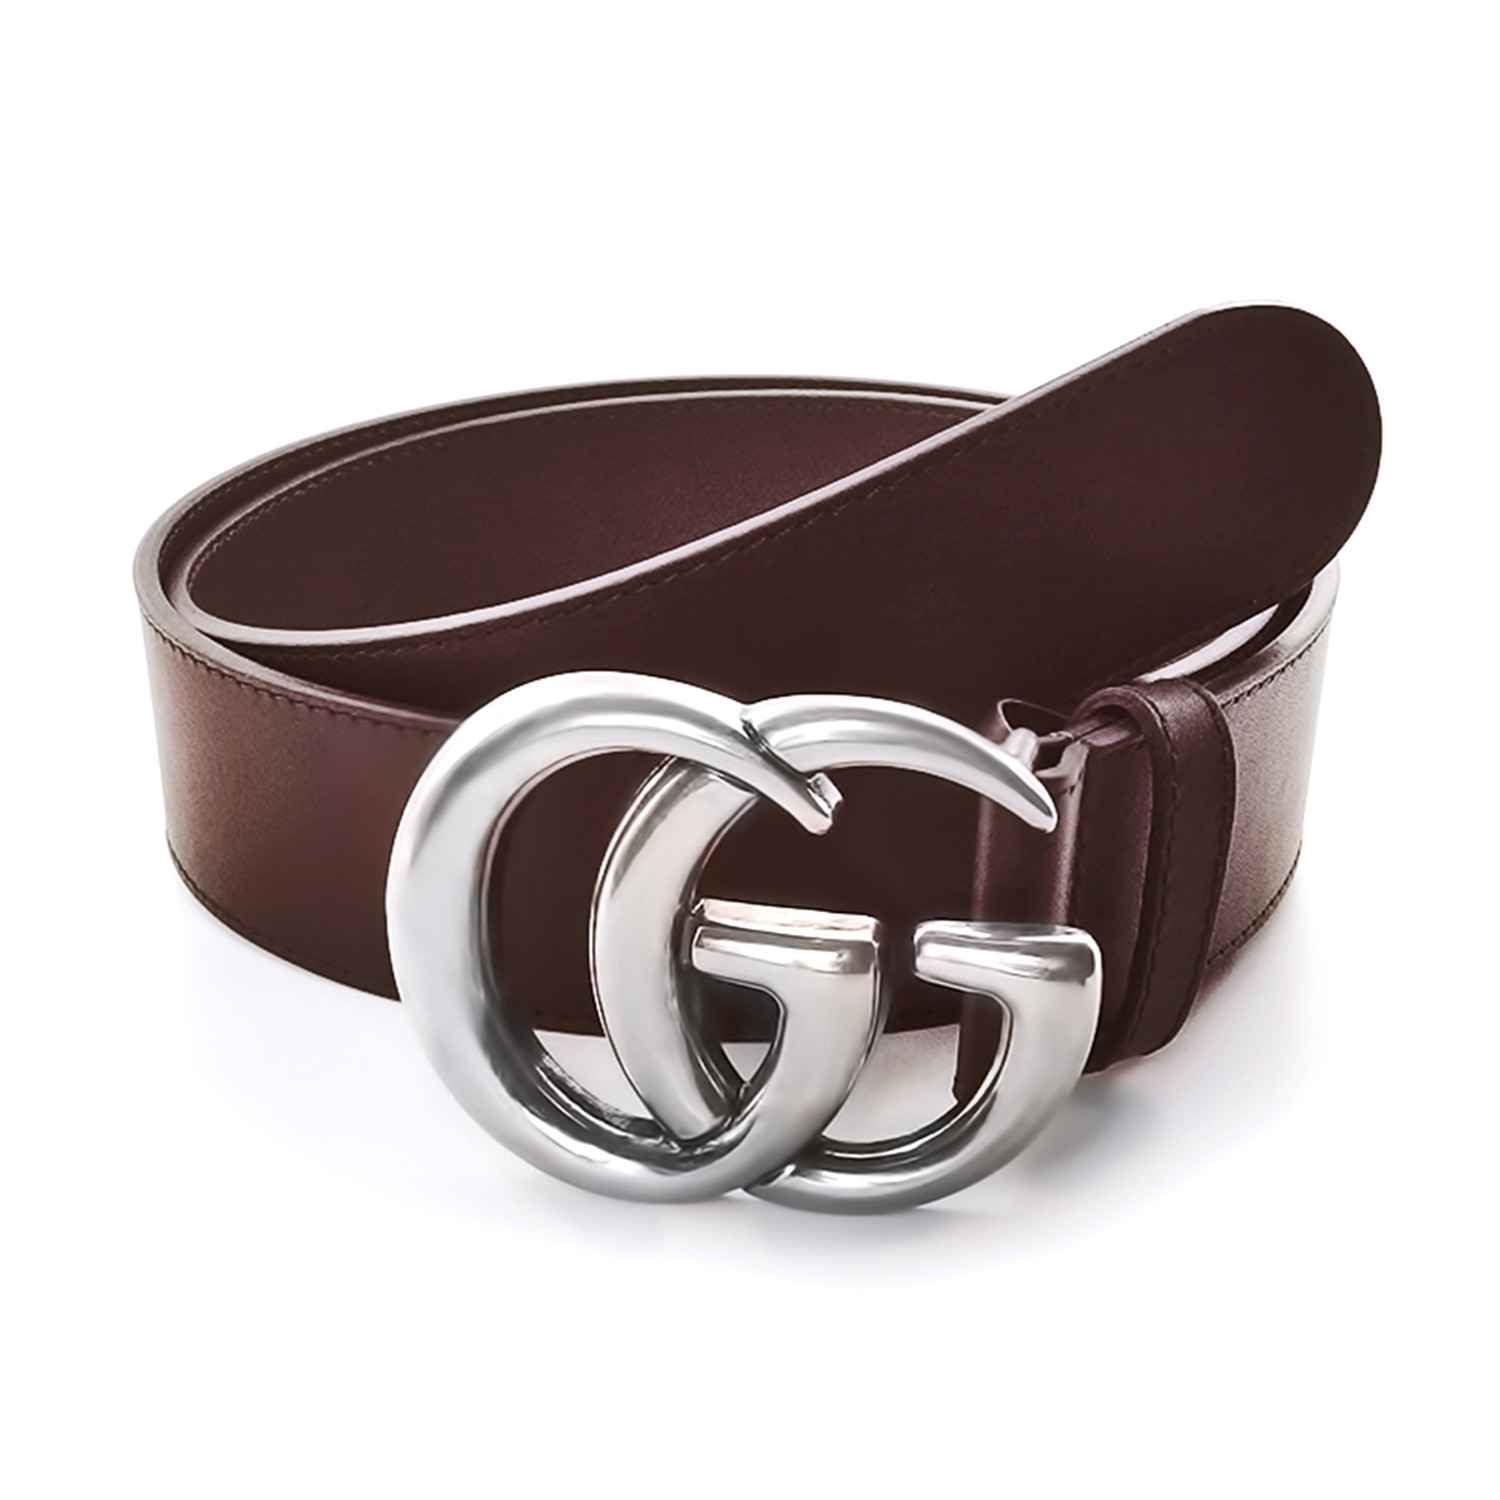 gg belt brown